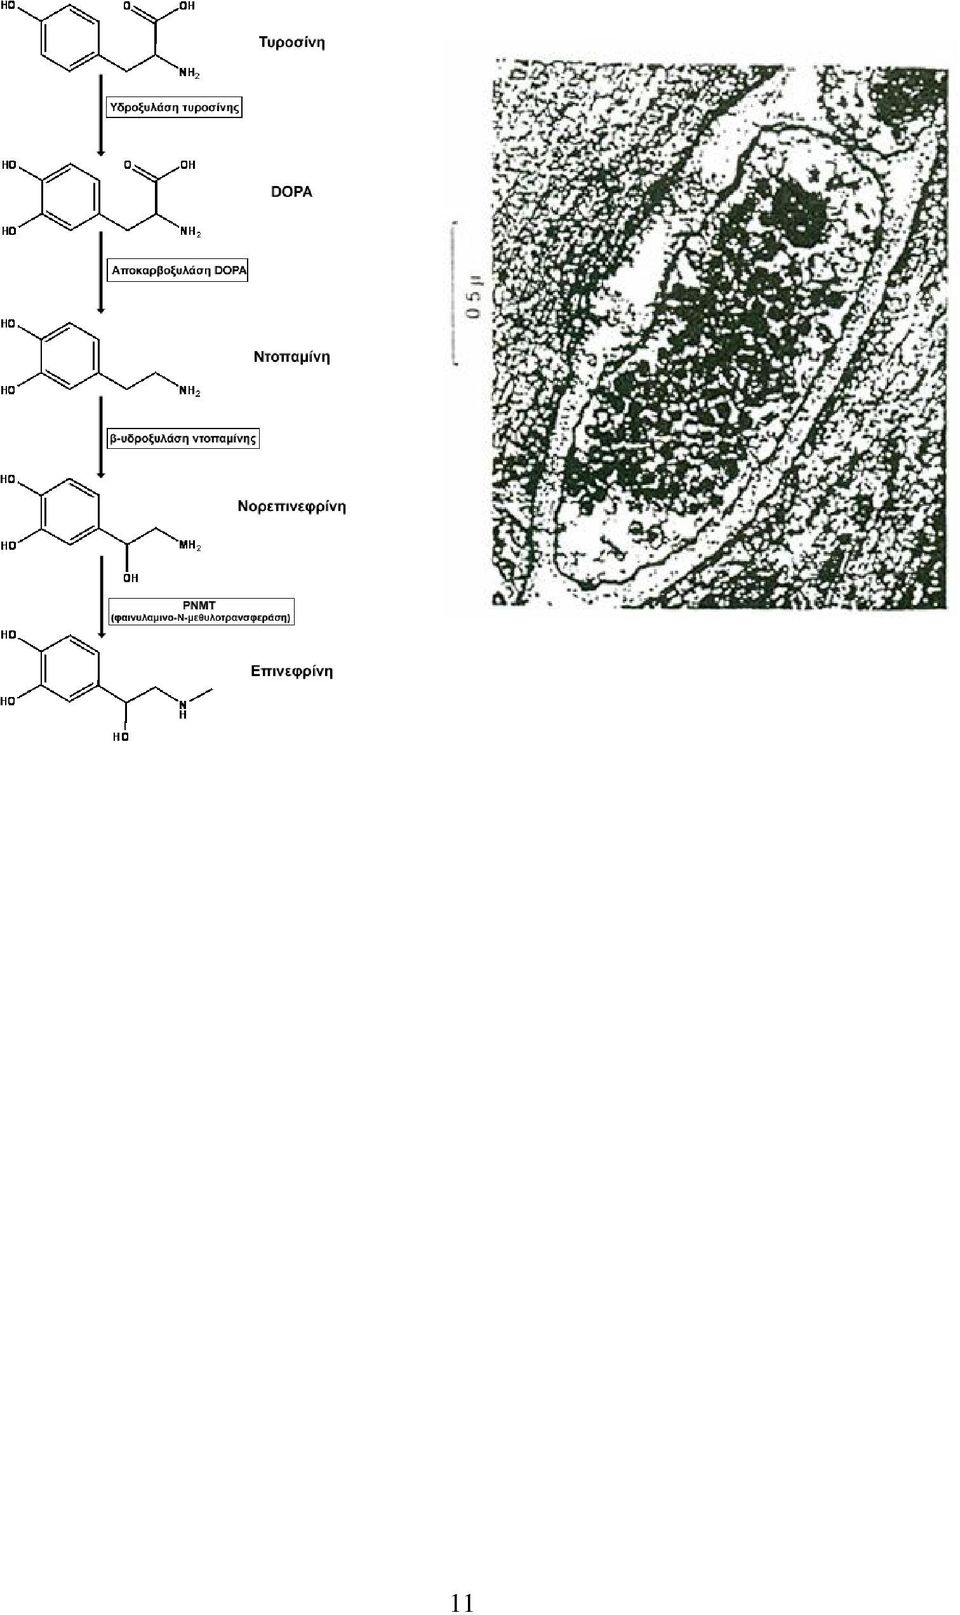 Η φαινυλαιθανολάμινο-ν-μεθυλοτρανσφεράση (ΡΜΝΤ), αποτελεί το ένζυμο κλειδί της μετατροπής της νορεπινεφρίνης σε επινεφρίνη και εντοπίζεται κυρίως σε εξειδικευμένα κύτταρα του μυελού των επινεφριδίων.